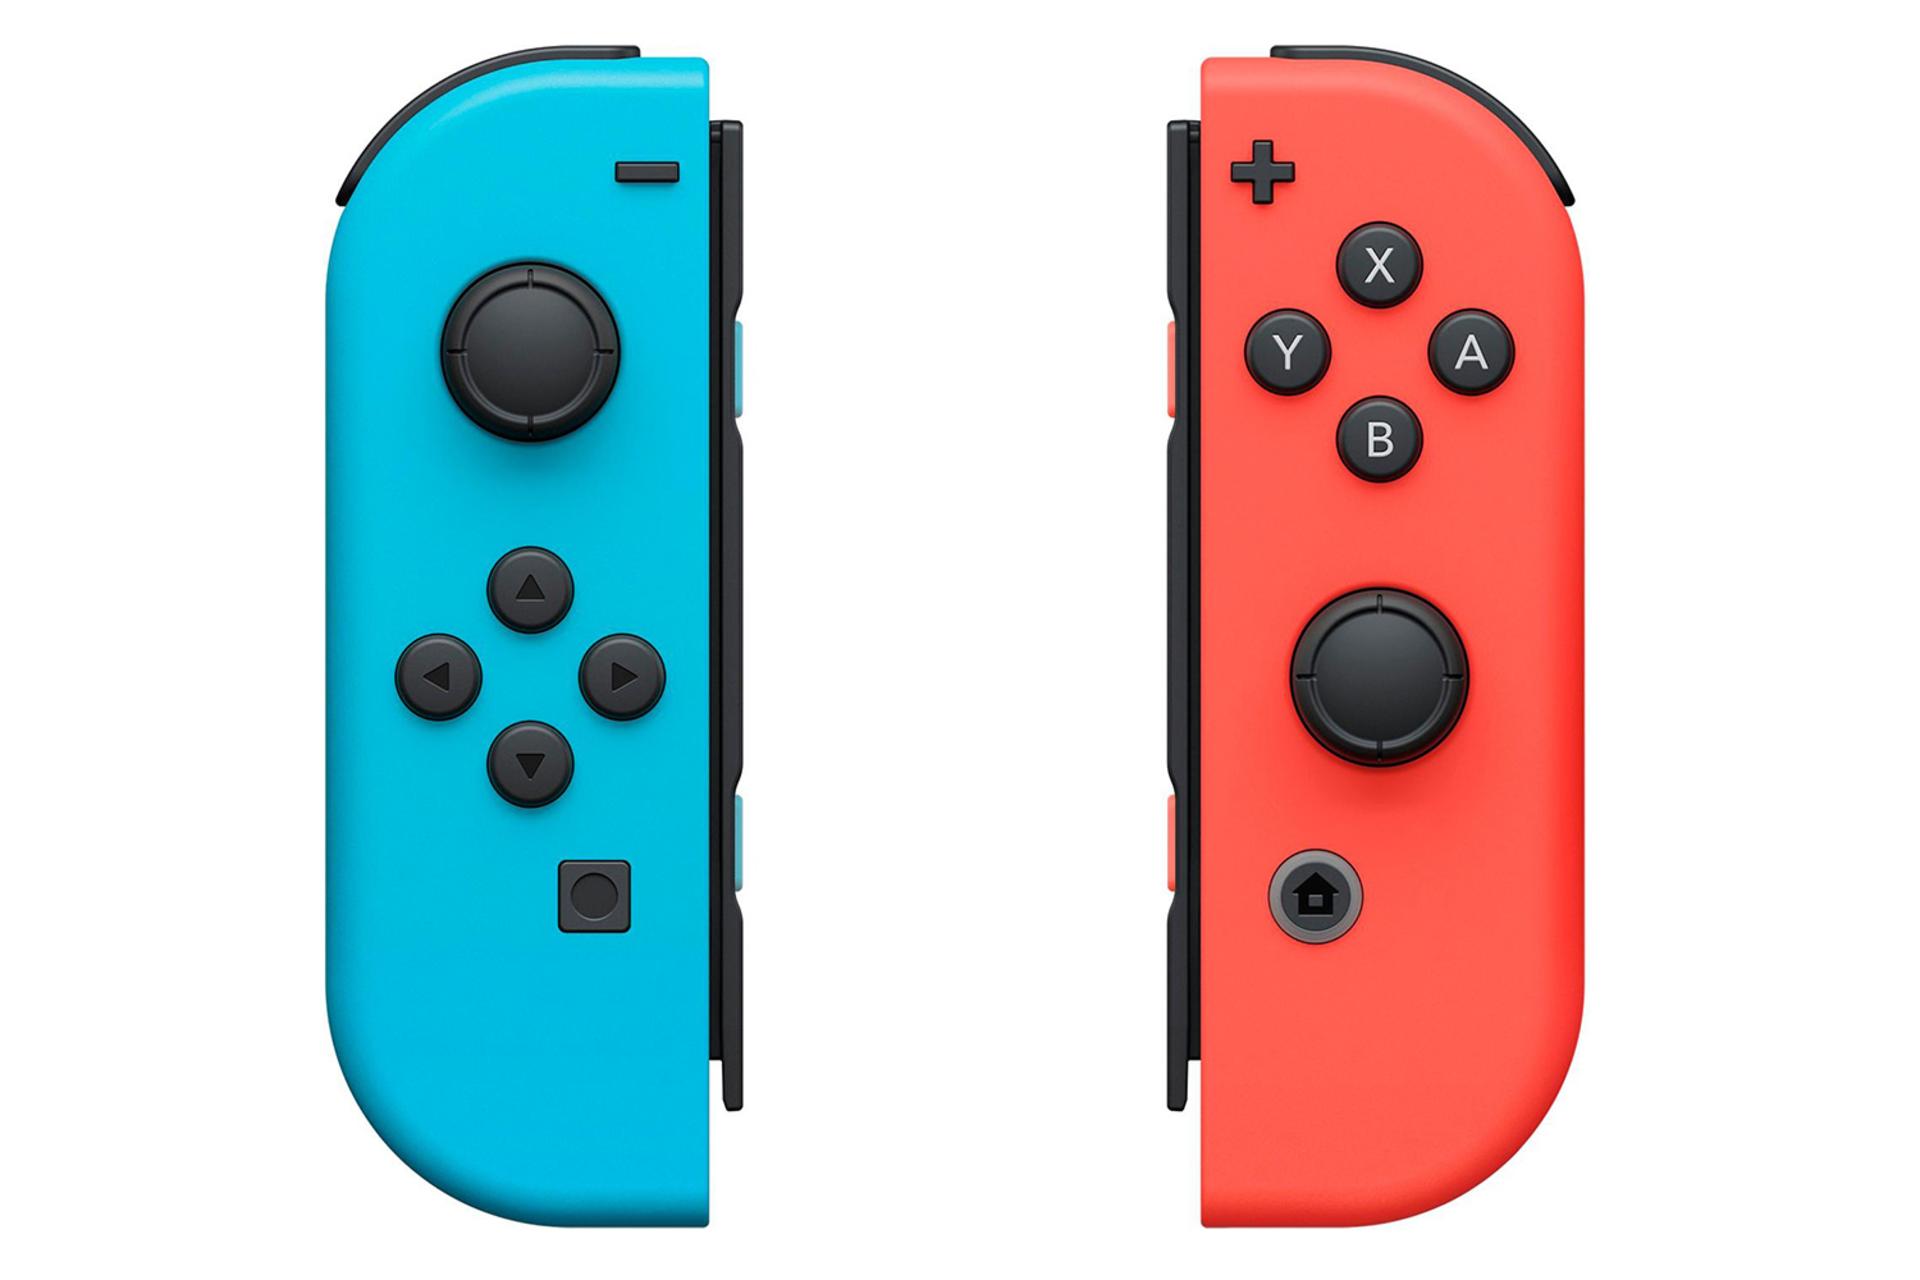 مرجع متخصصين ايران دسته بازي نينتندو جوي كان Nintendo Joy-Con نماي بالا رنگ آبي و قرمز